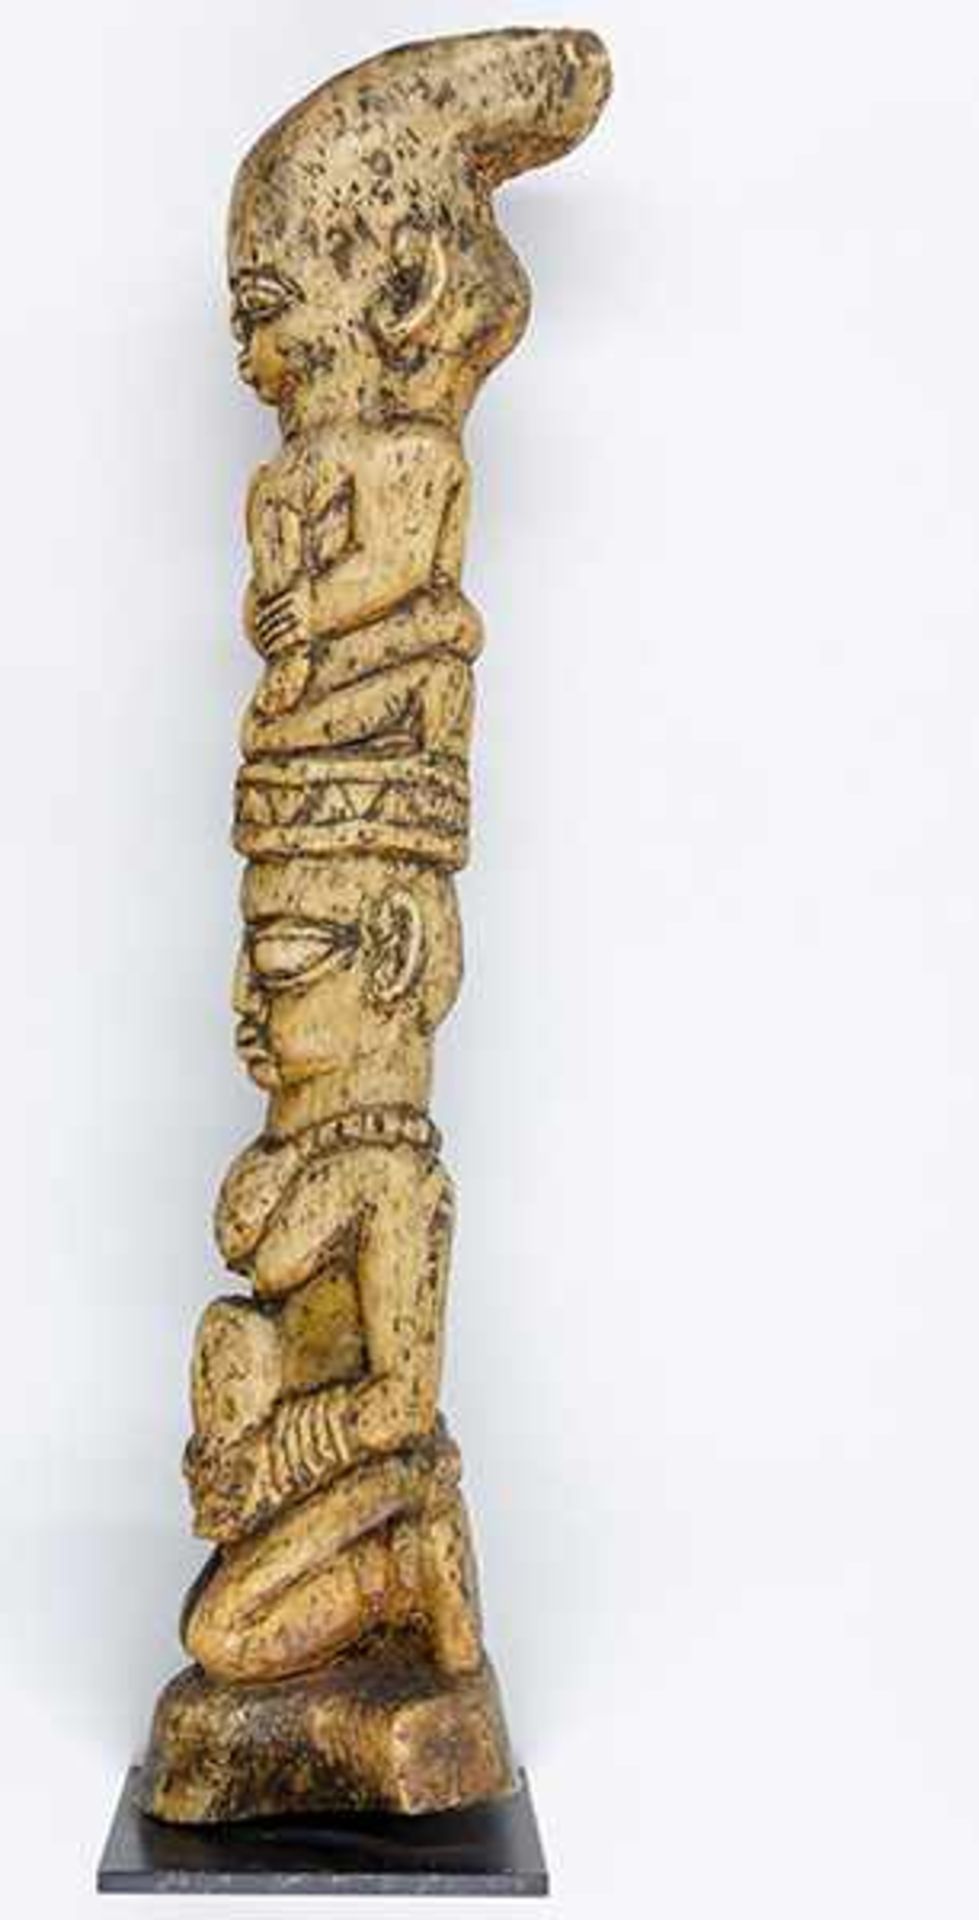 Afrikana - - Königspaar, Yoruba, Nigeria. Knochen auf Metallplatte montiert. Größe: 54 x 11 x 11 - Bild 2 aus 3